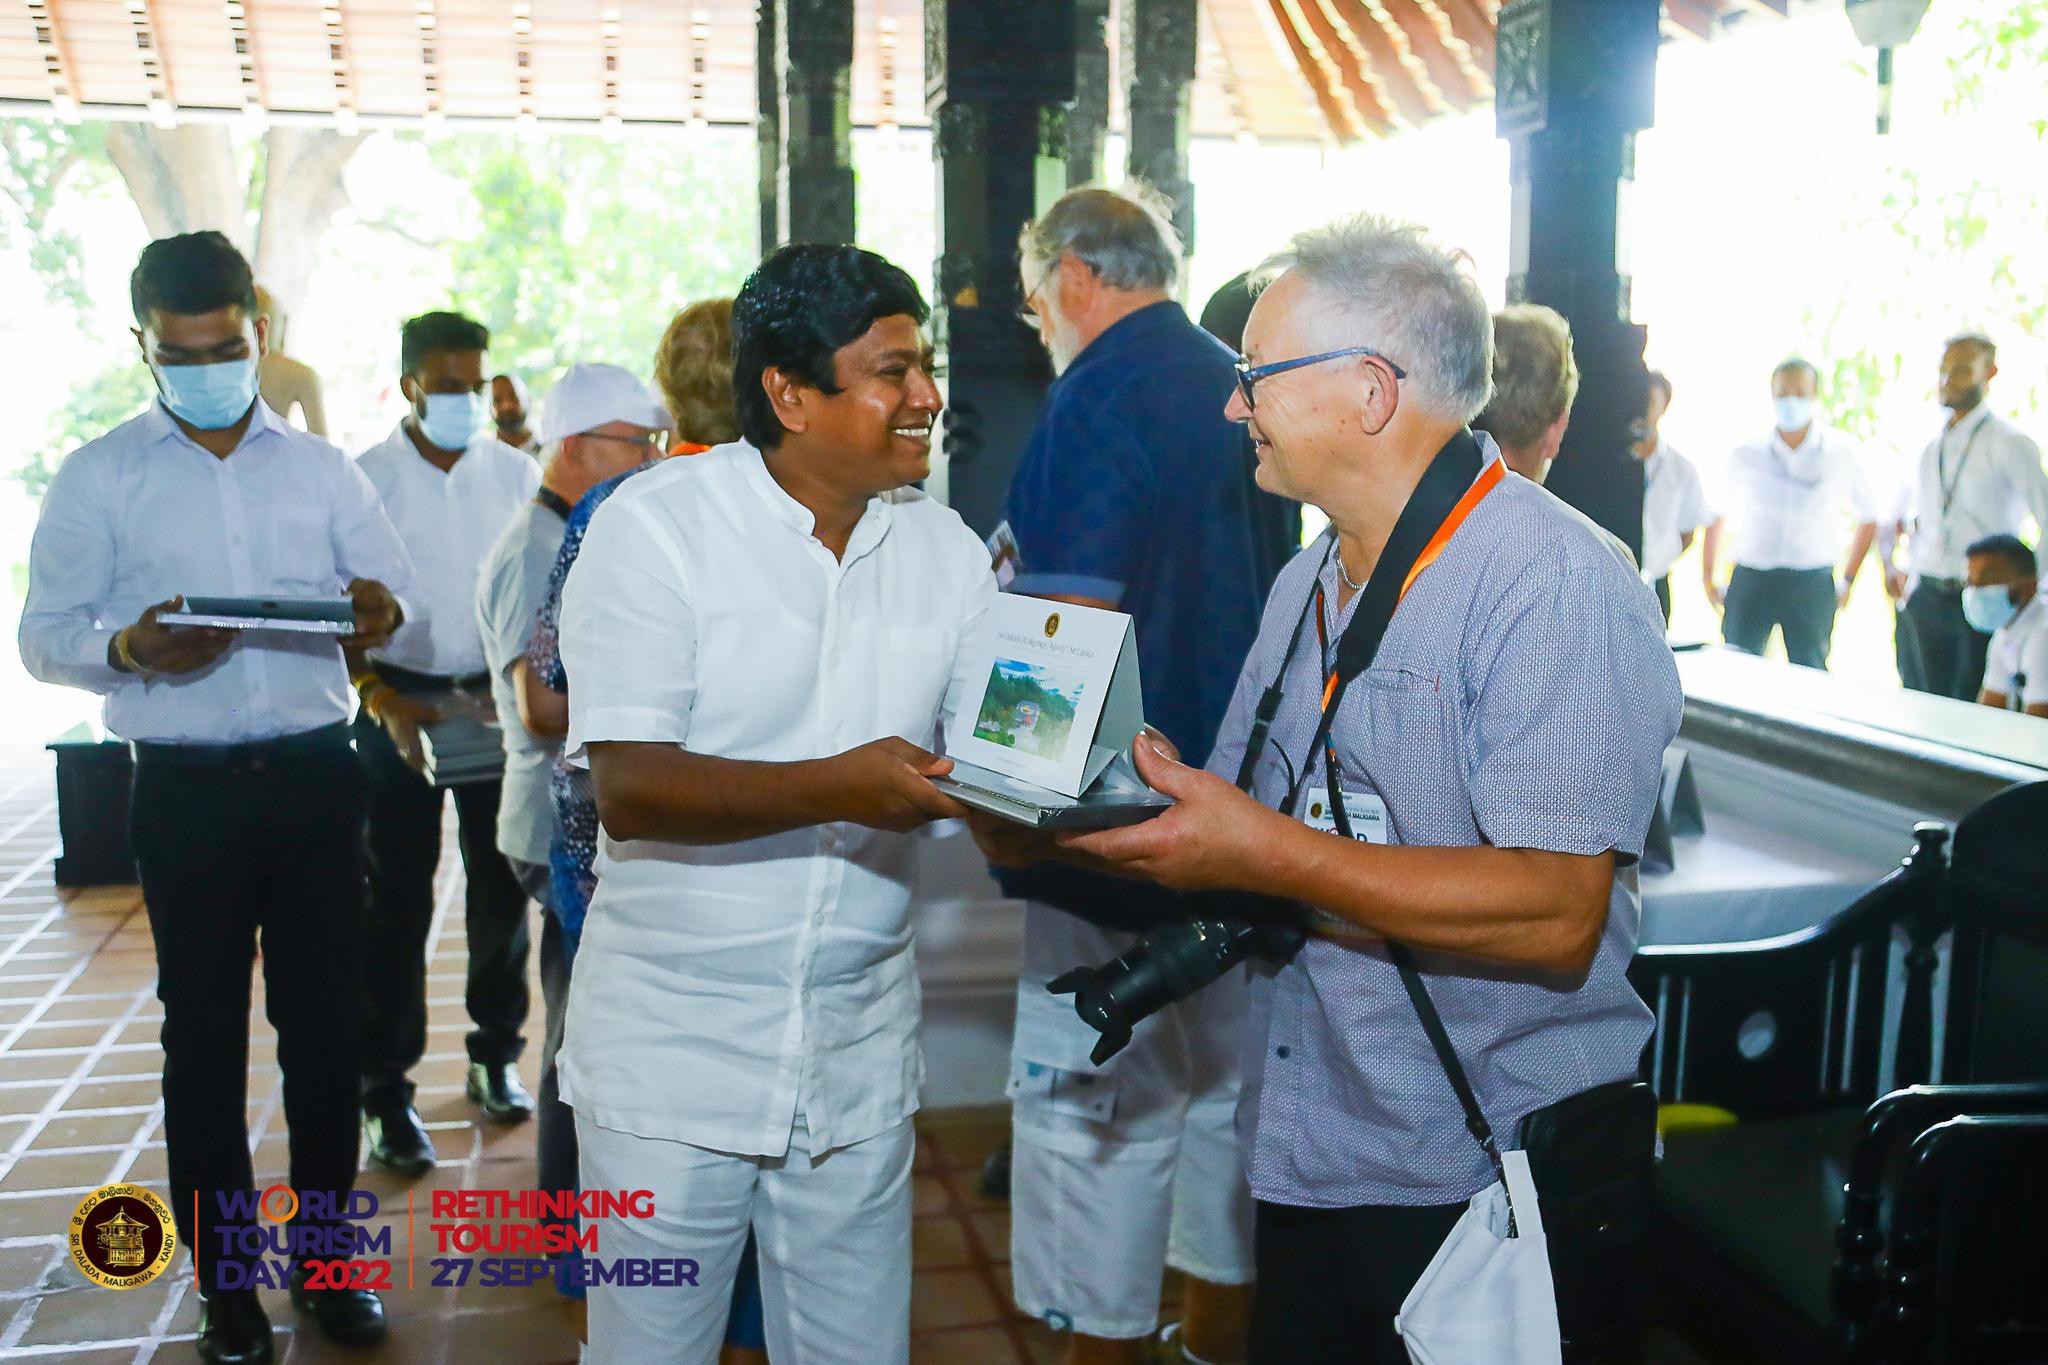 World Tourism Day 2022 celebrations that took place today at Sri Lanka's iconic Sri Dalada Maligawa